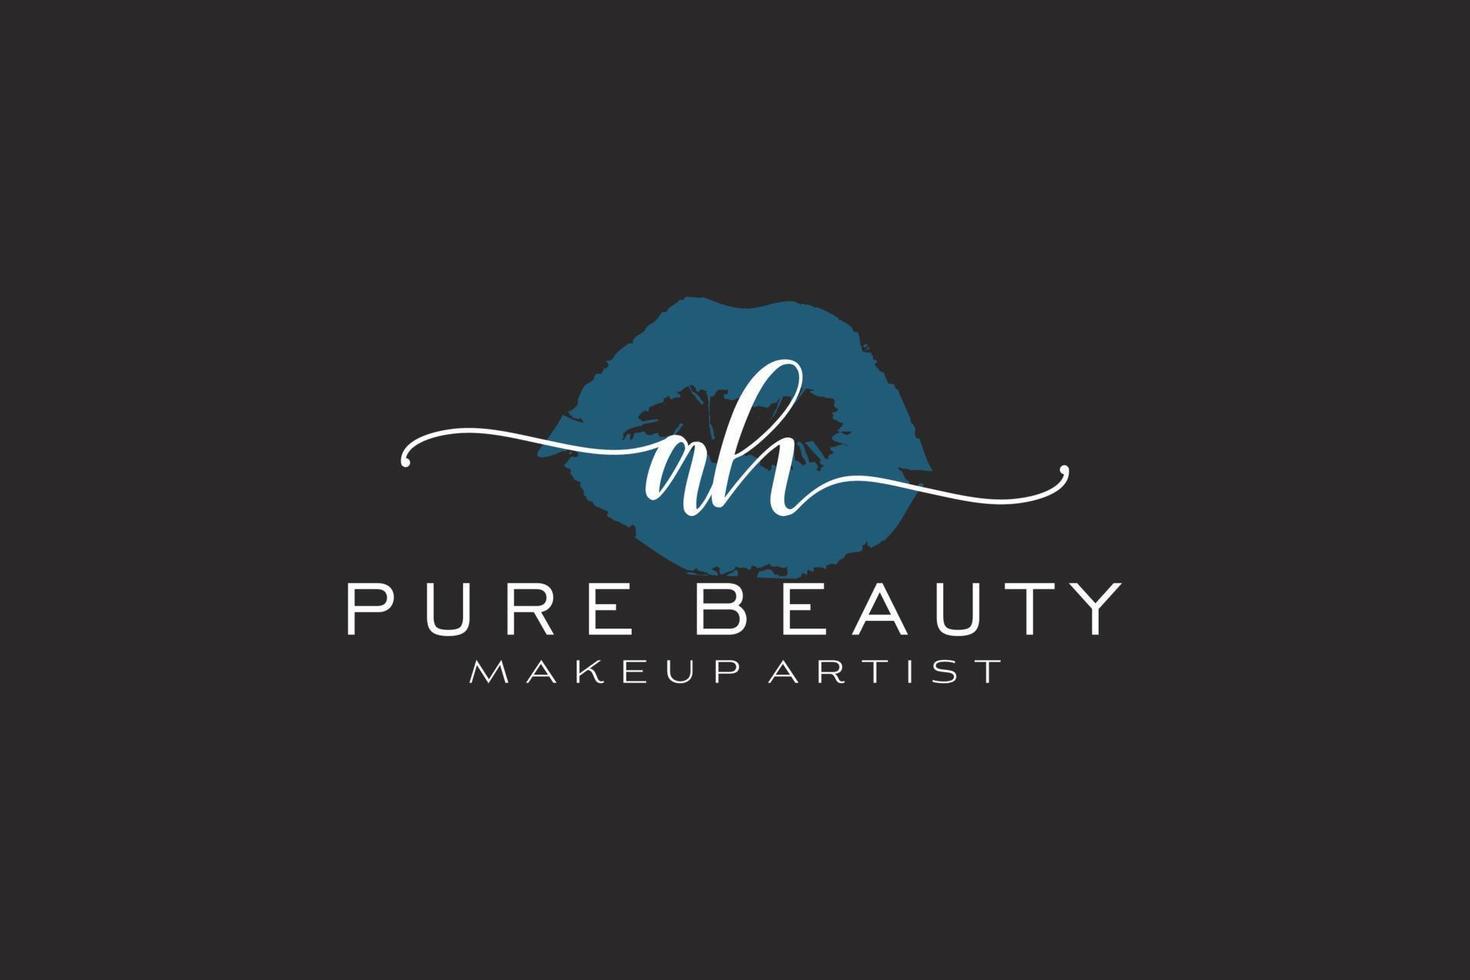 création initiale de logo préfabriqué pour les lèvres aquarelles ah, logo pour la marque d'entreprise de maquilleur, création de logo de boutique de beauté blush, logo de calligraphie avec modèle créatif. vecteur